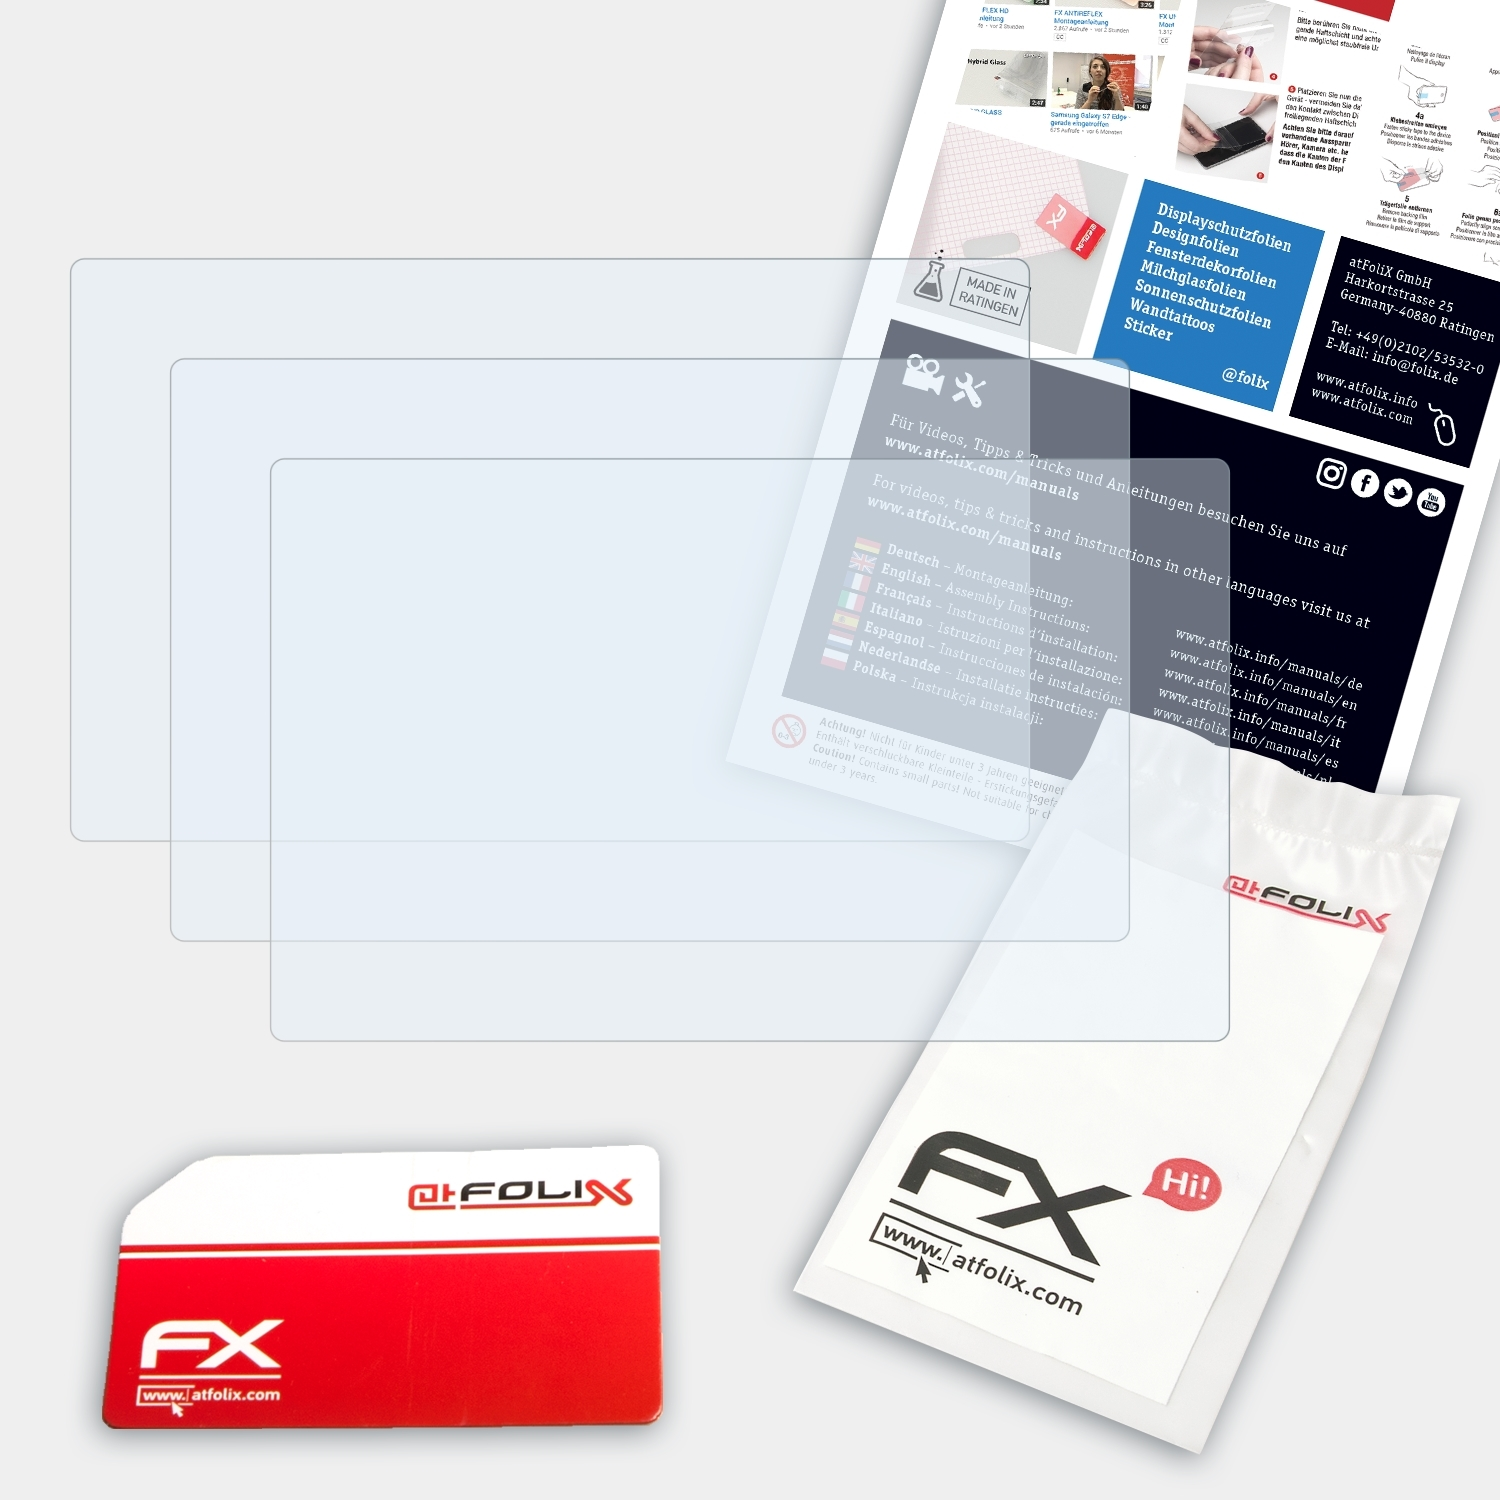 ATFOLIX 3x FX-Clear Displayschutz(für Medion S3867) GoPal